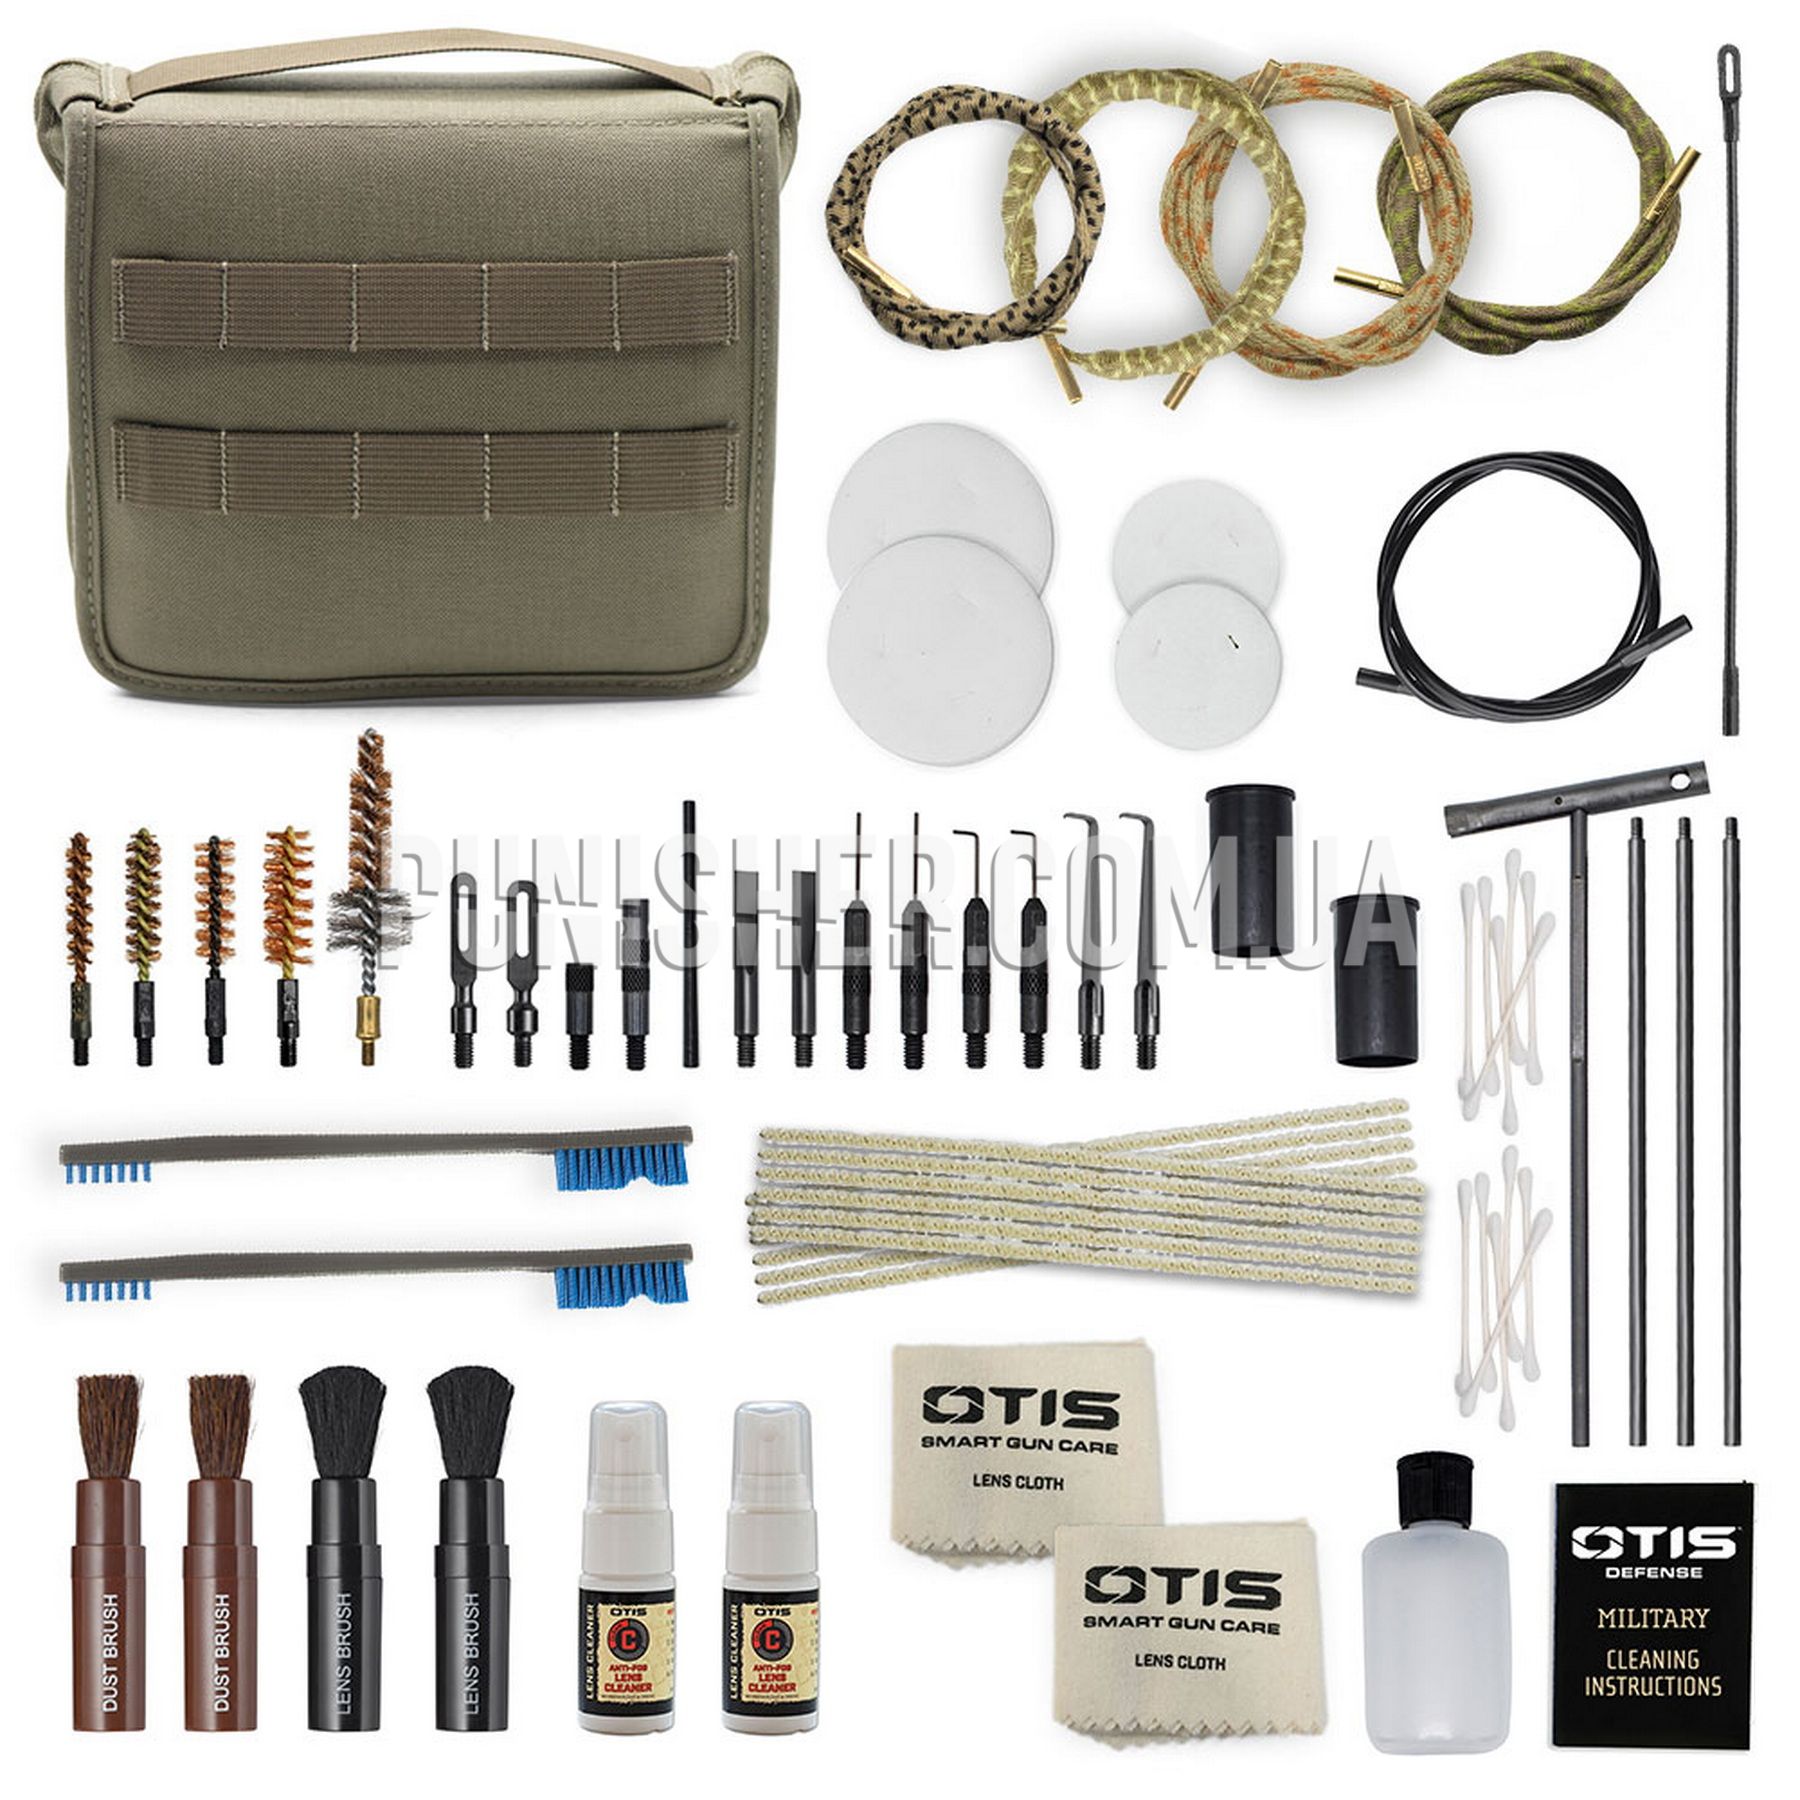 Otis 5.56mm Military Cleaning Kit